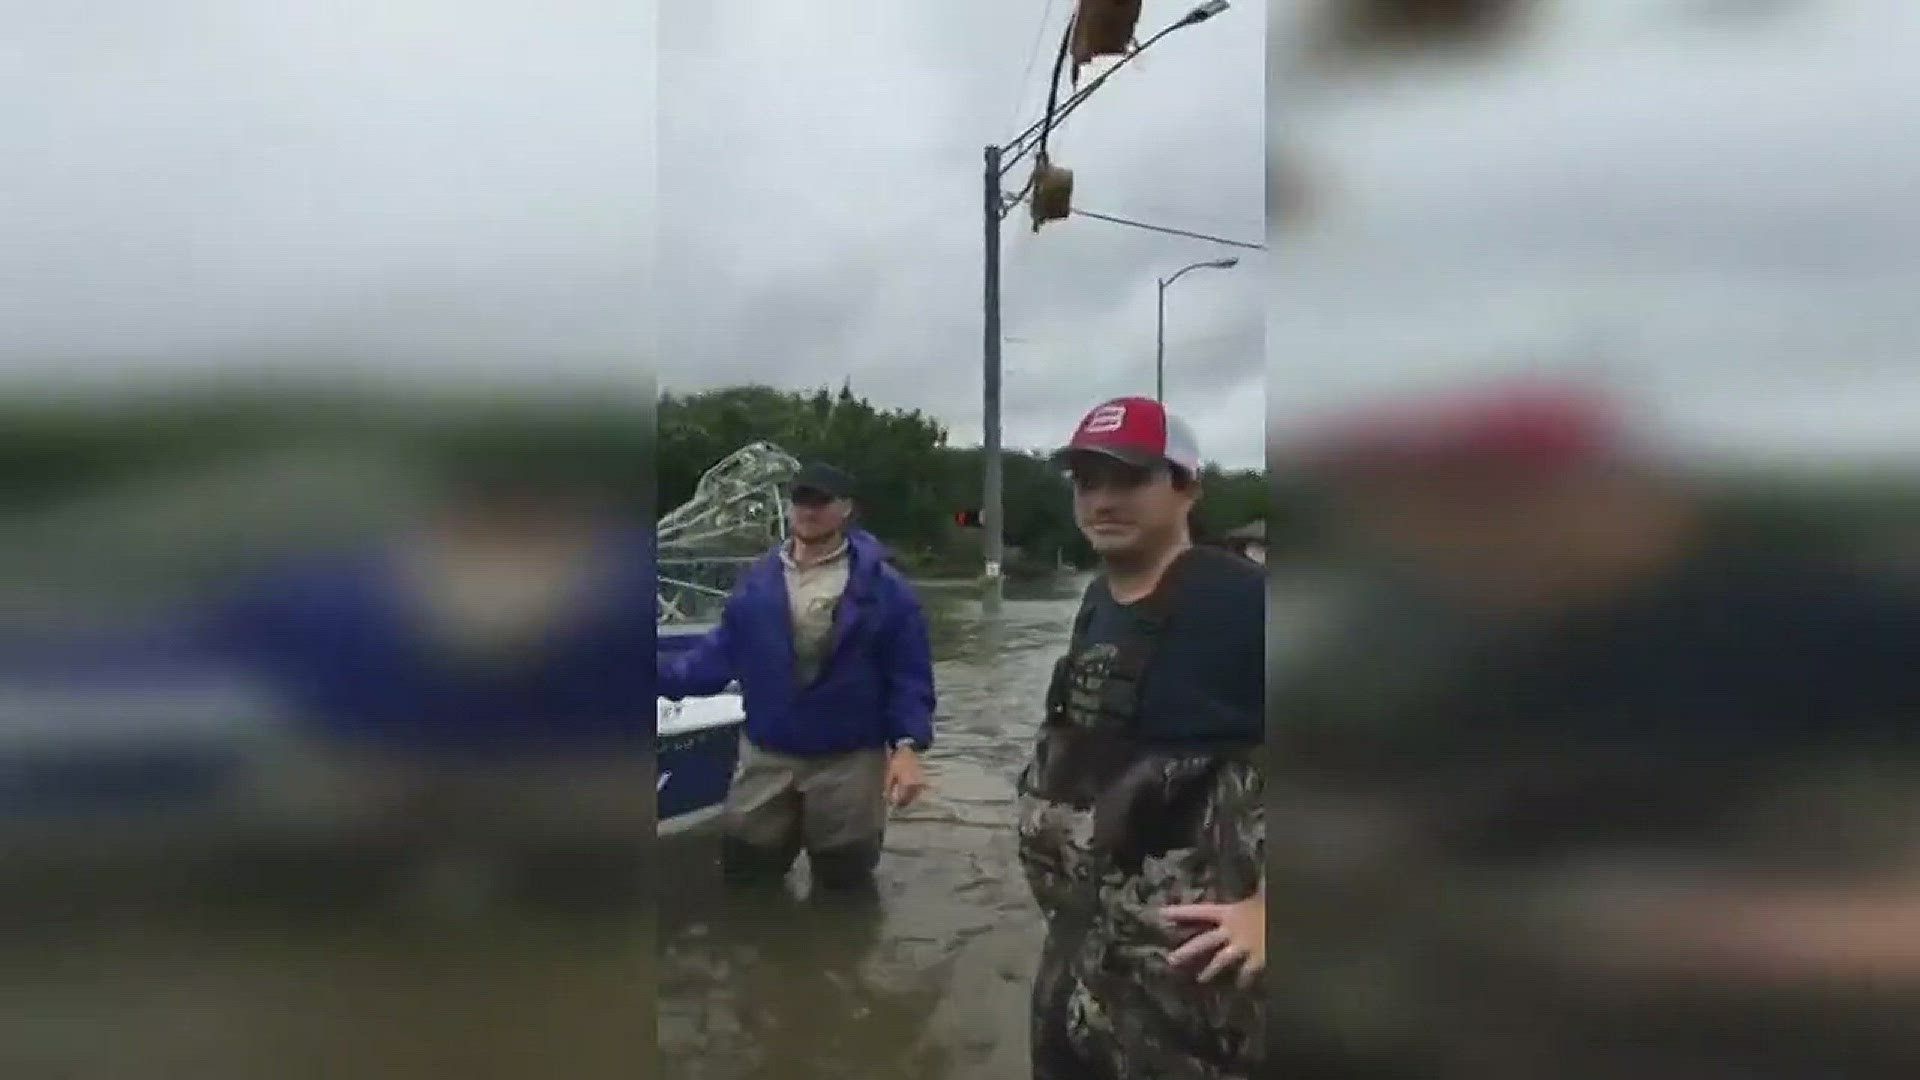 Local hero helps rescue people in reservoir